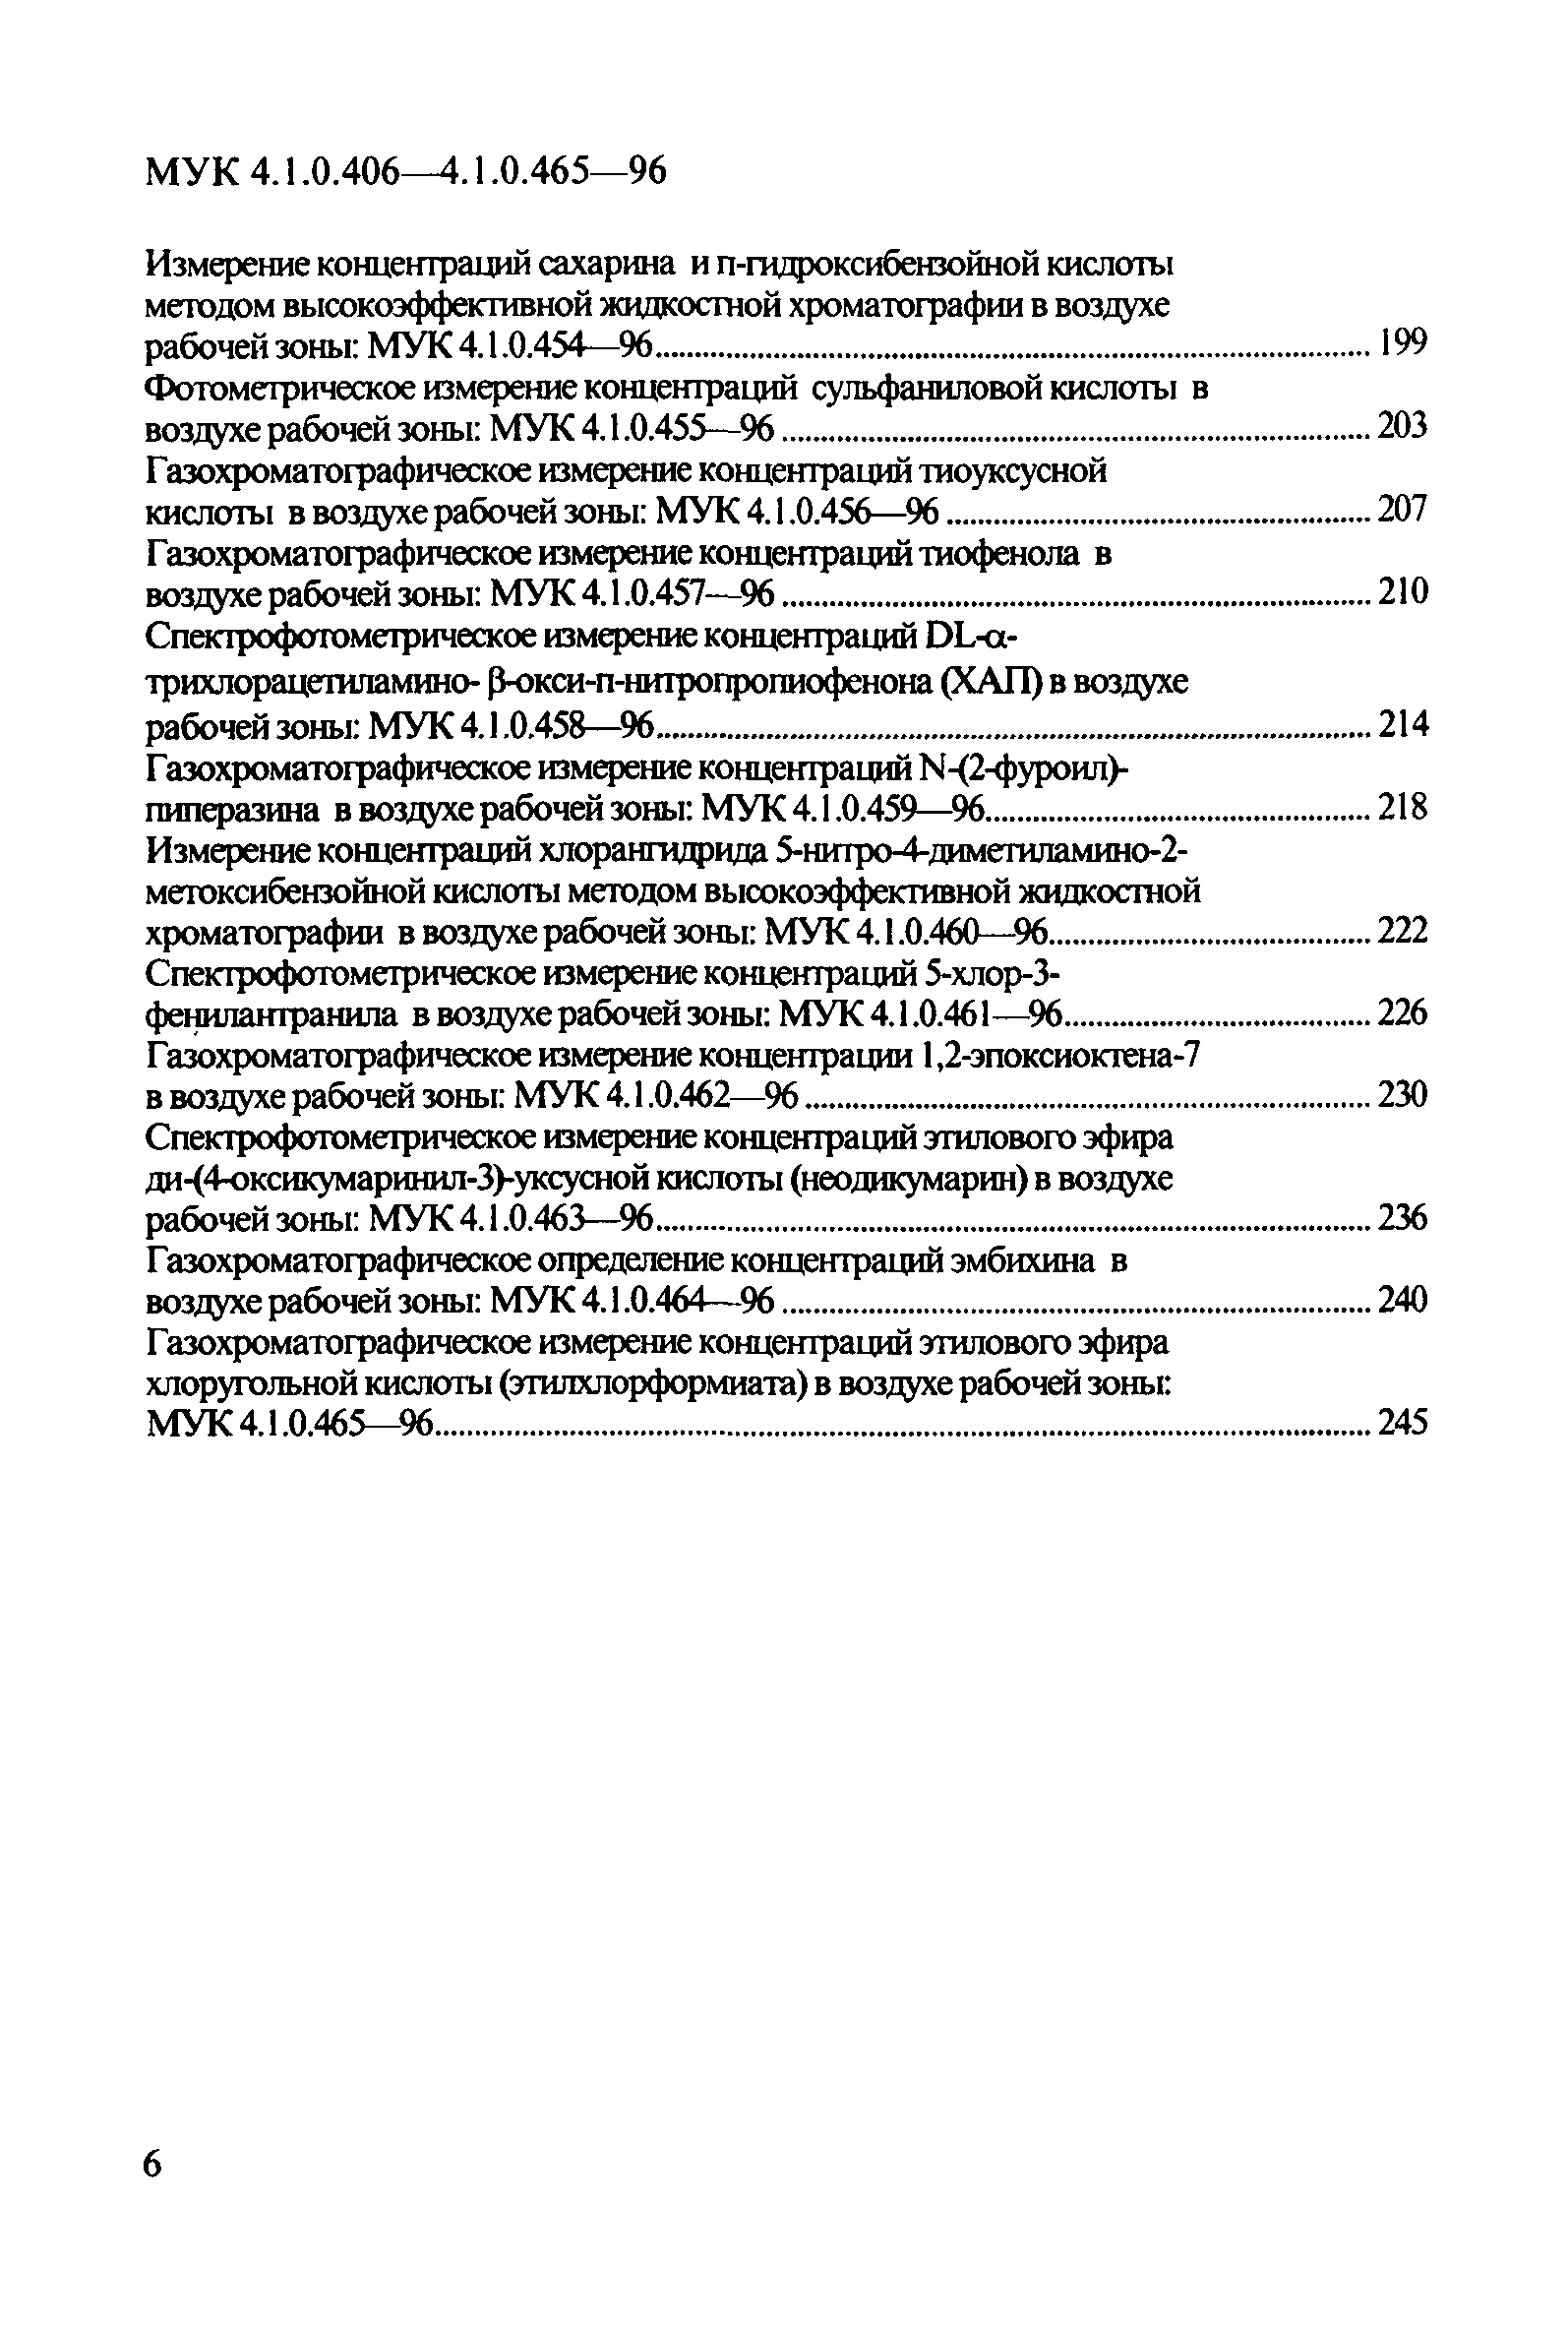 МУК 4.1.0.448-96